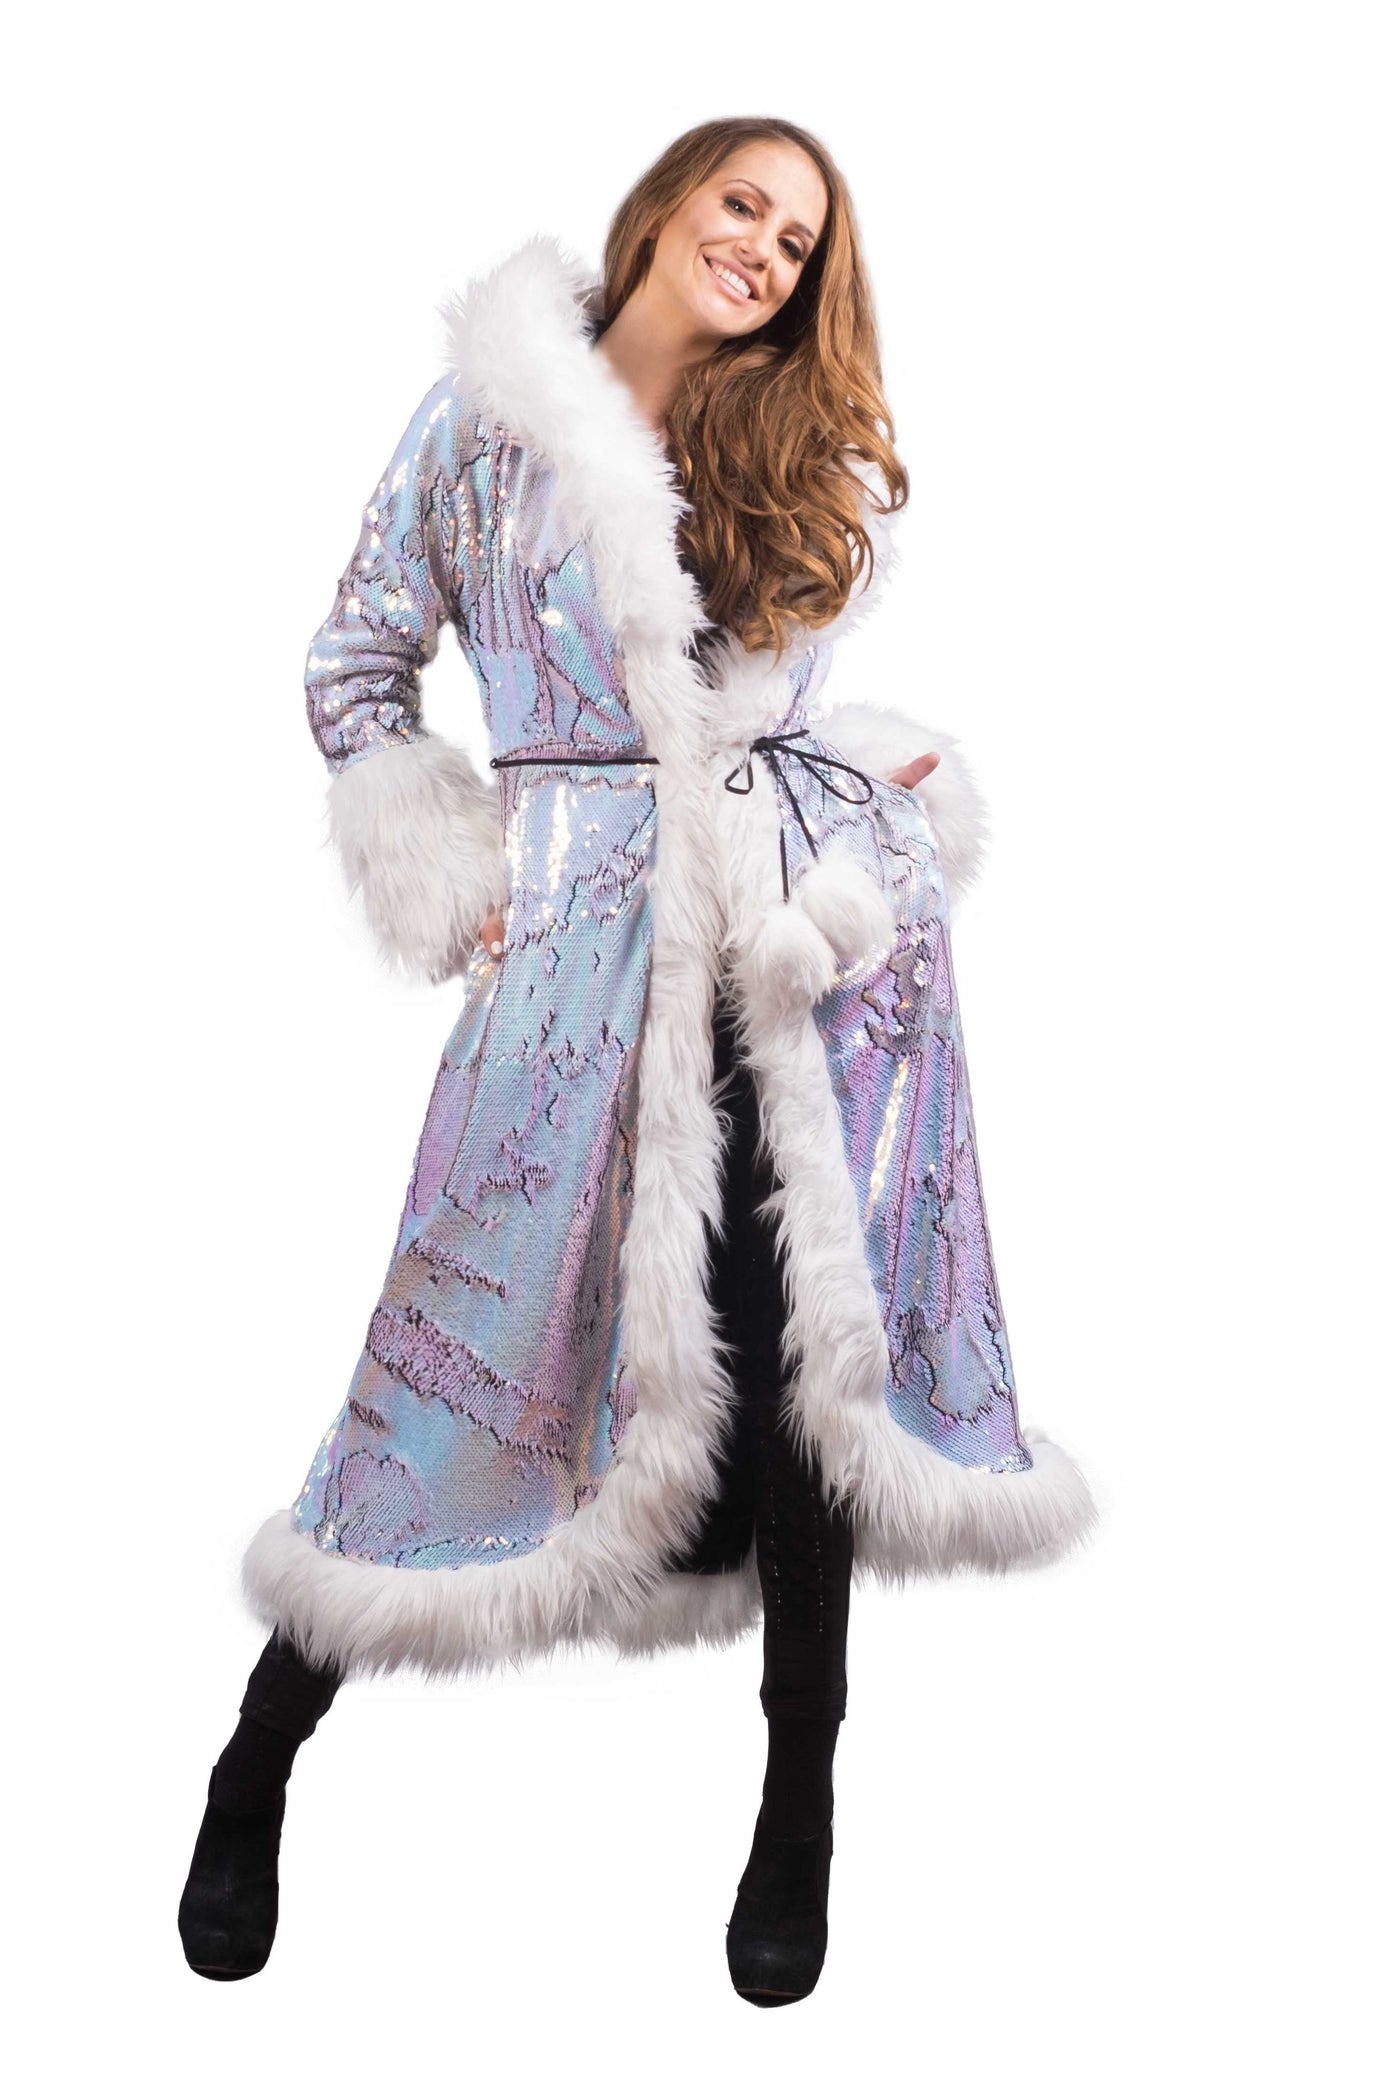 Women's Sequin Temptress Coat in "Fairy" STOCK